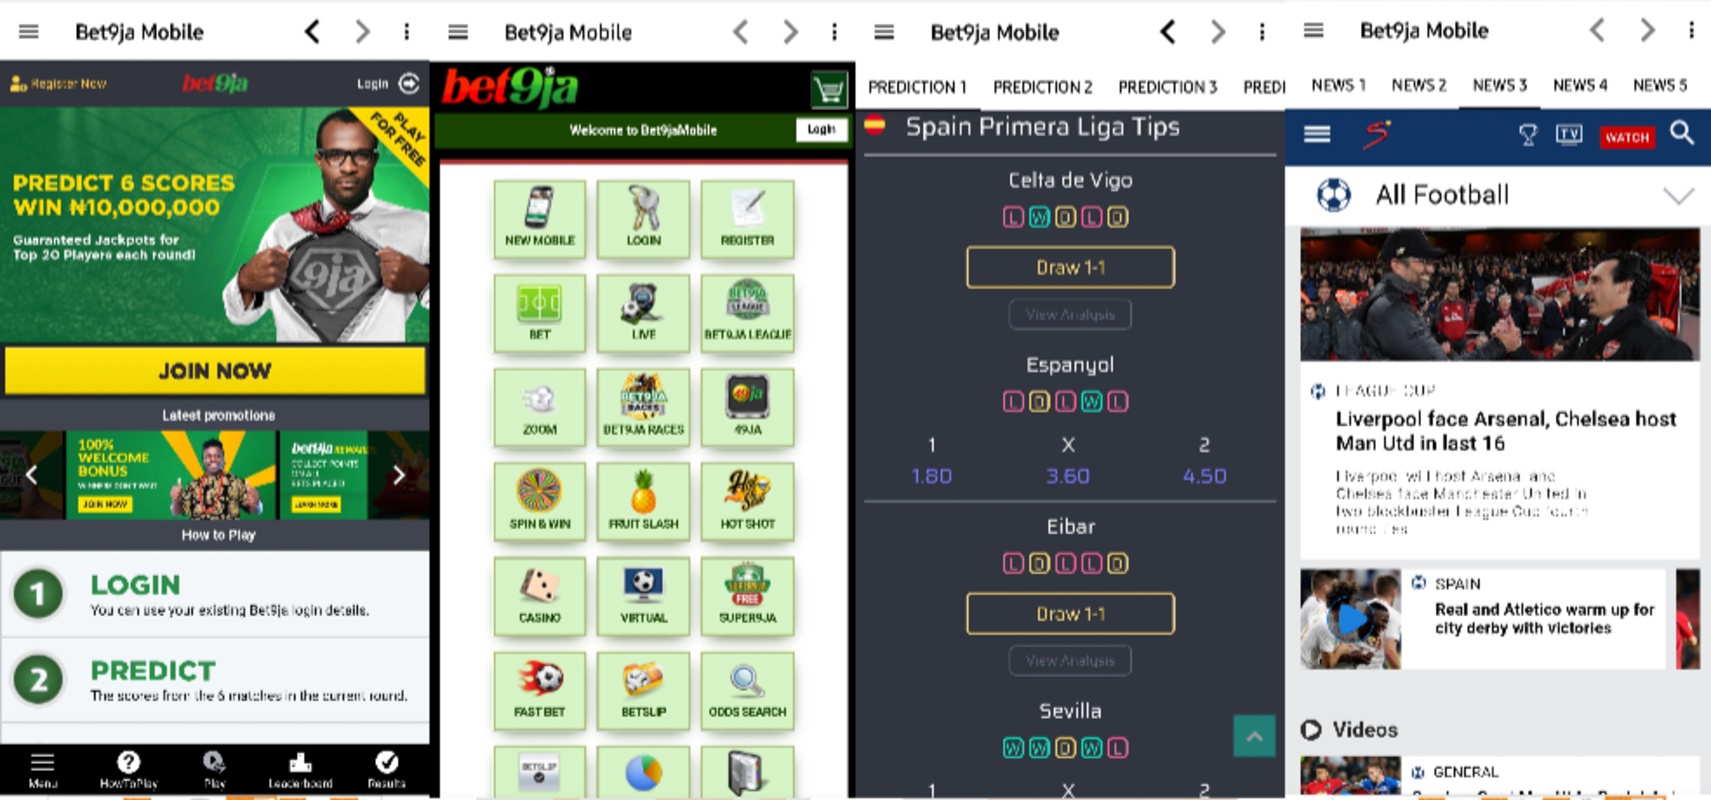 Bet9ja Mobile 81.02.22 APK feature